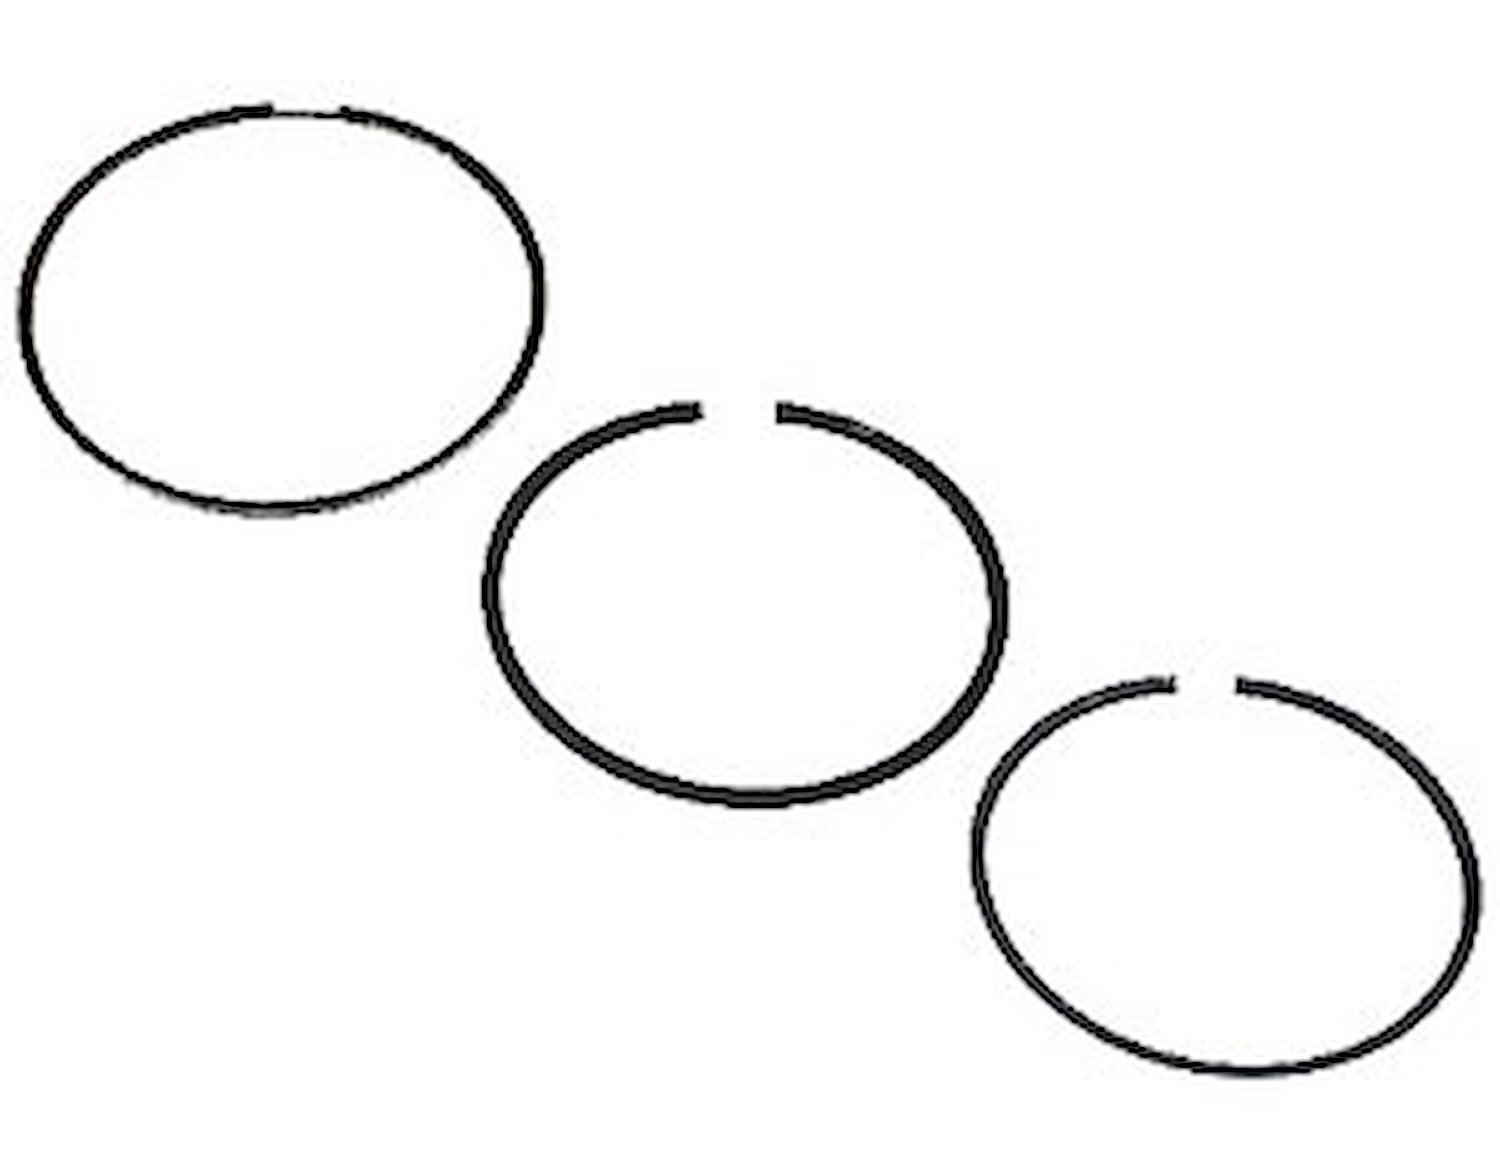 Standard Tension Piston Ring Set Bore: 4.1851"/Non-file fit